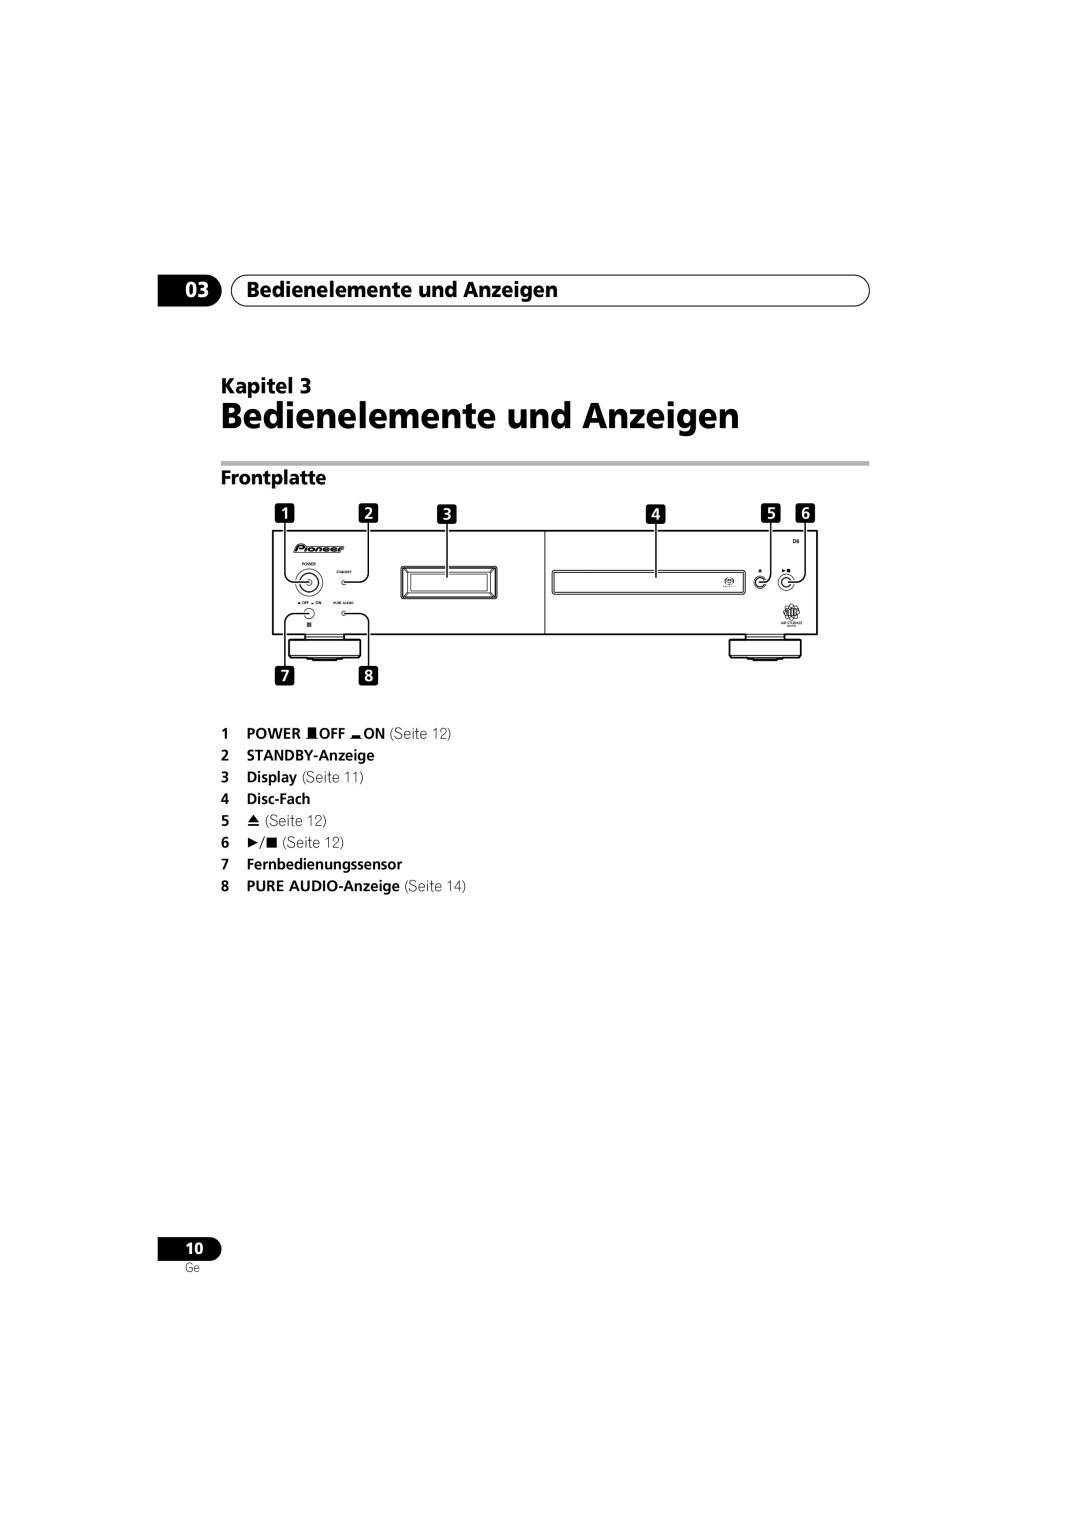 Pioneer PD-D6-J manual 03Bedienelemente und Anzeigen Kapitel, Frontplatte, Power, Standby, Pure Audio 